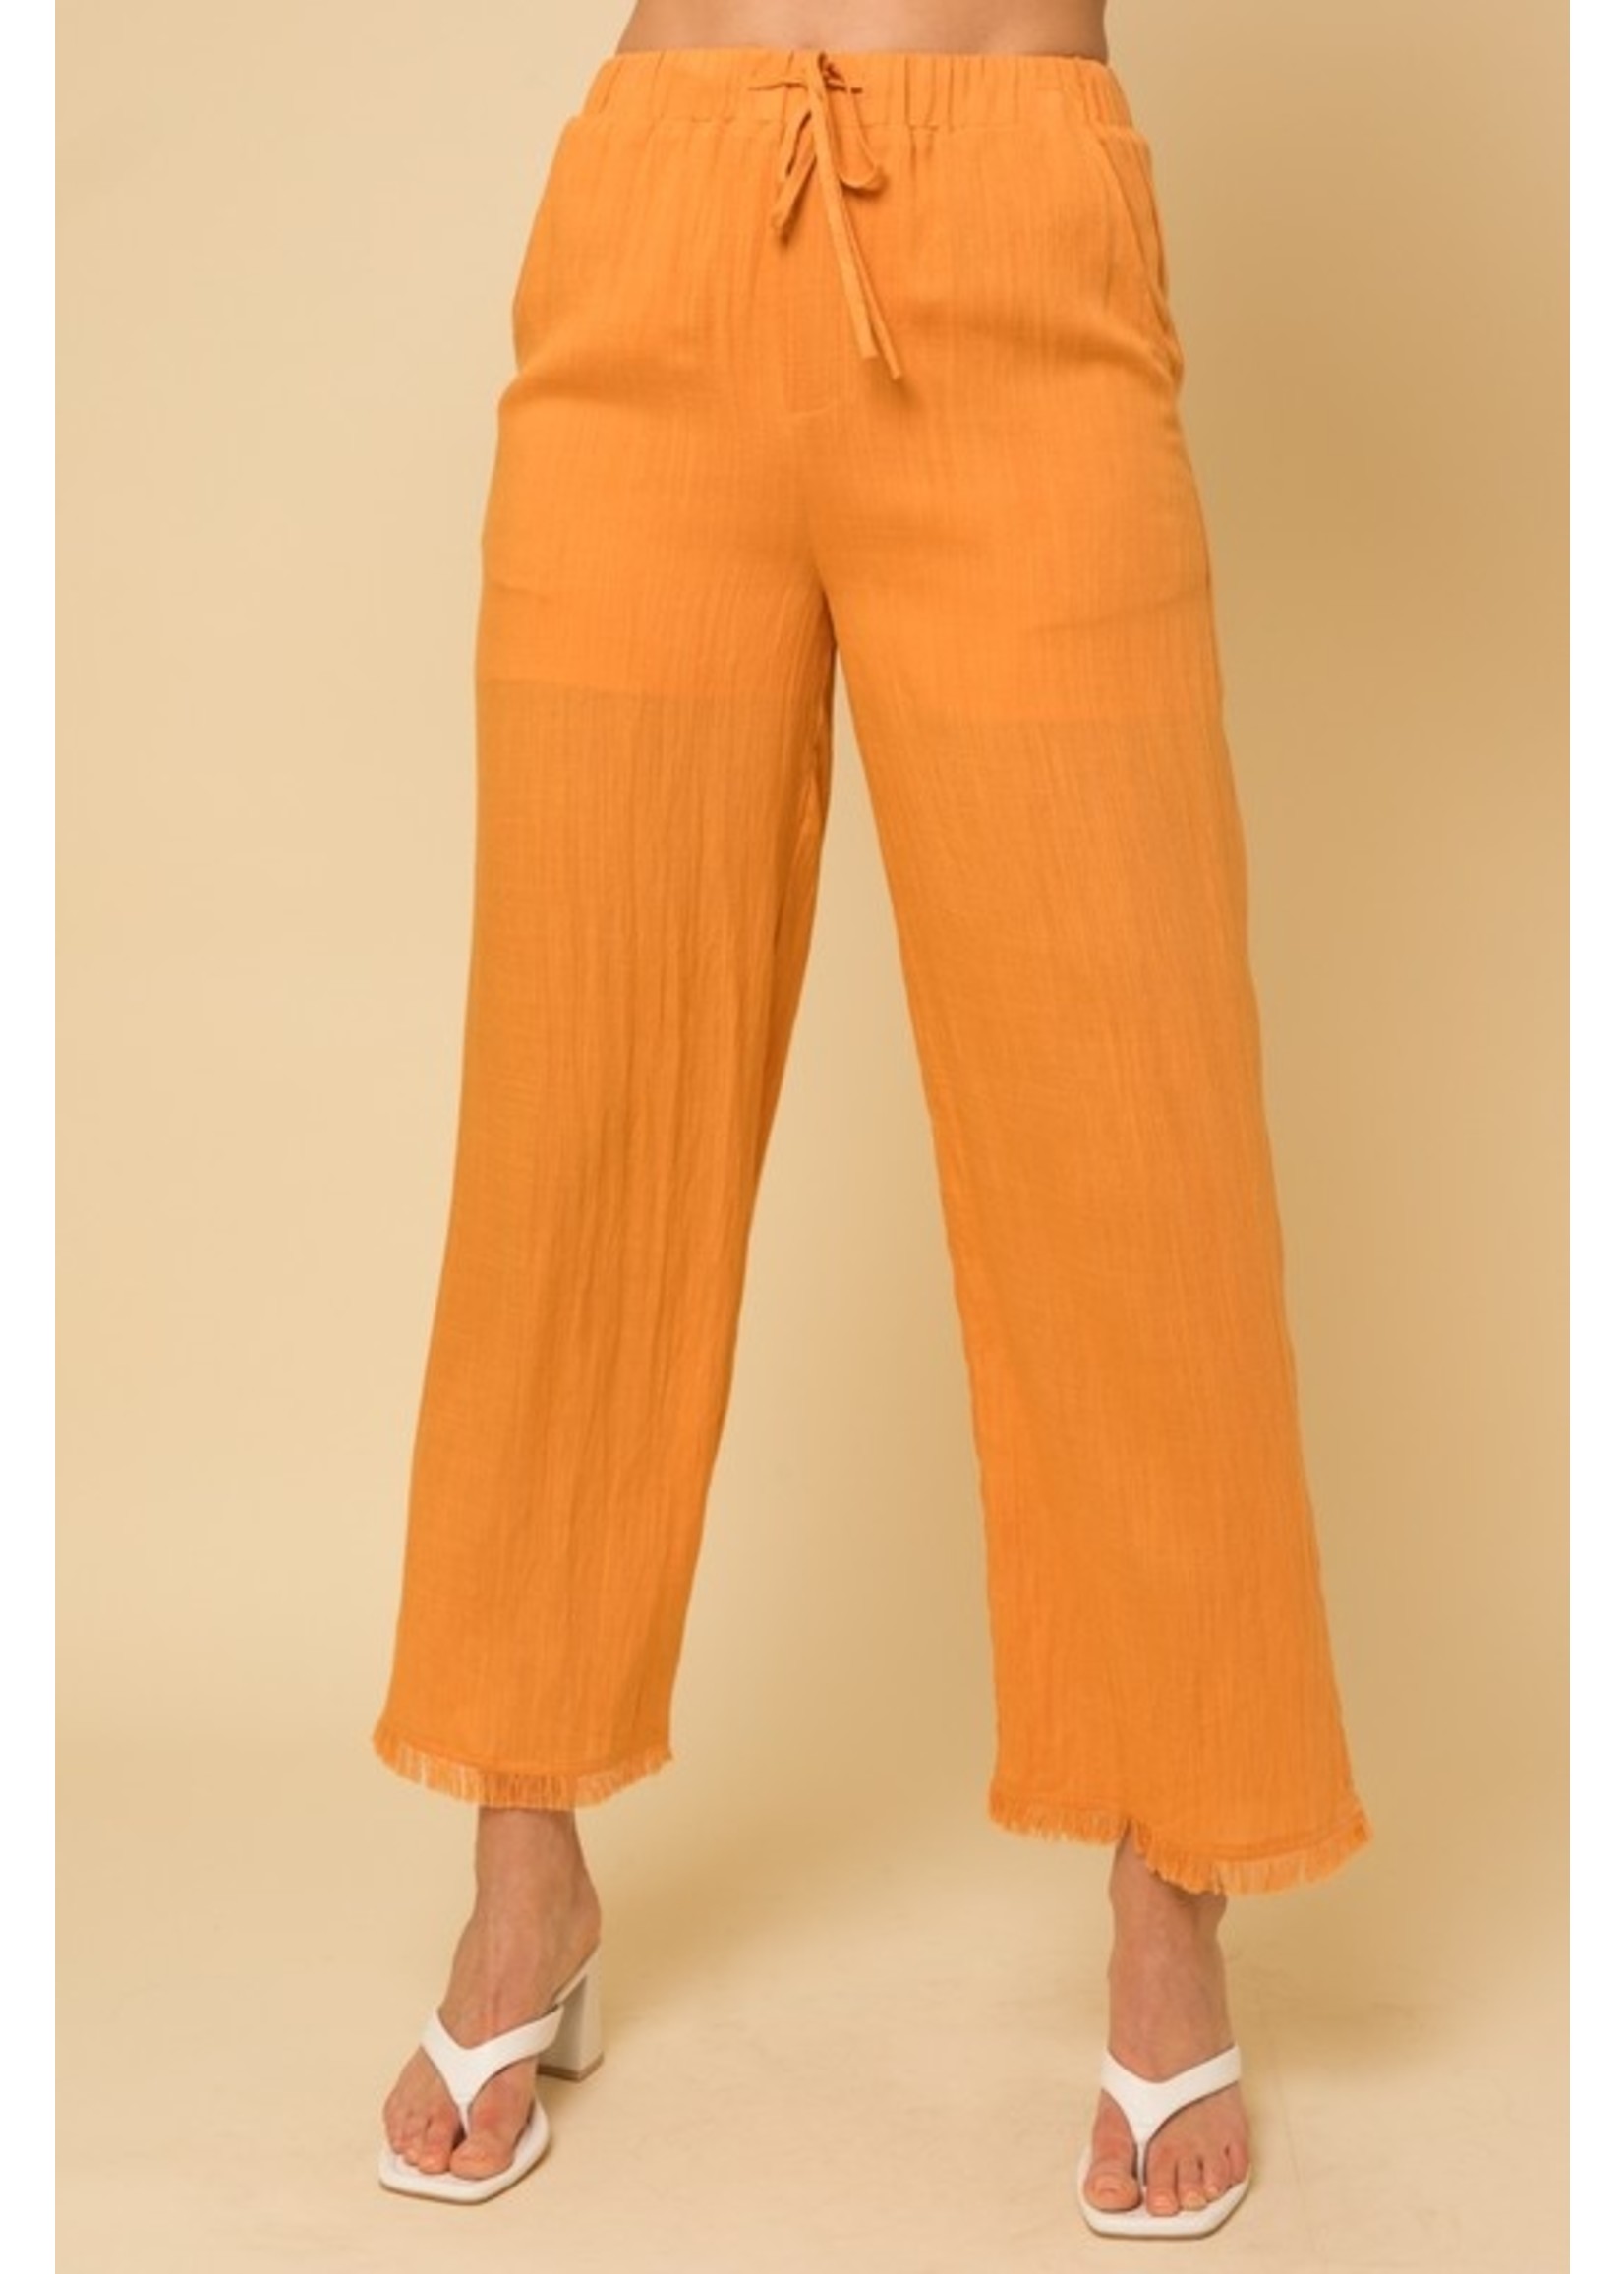 Frayed Hem Elastic Waist Beach Pant Orange